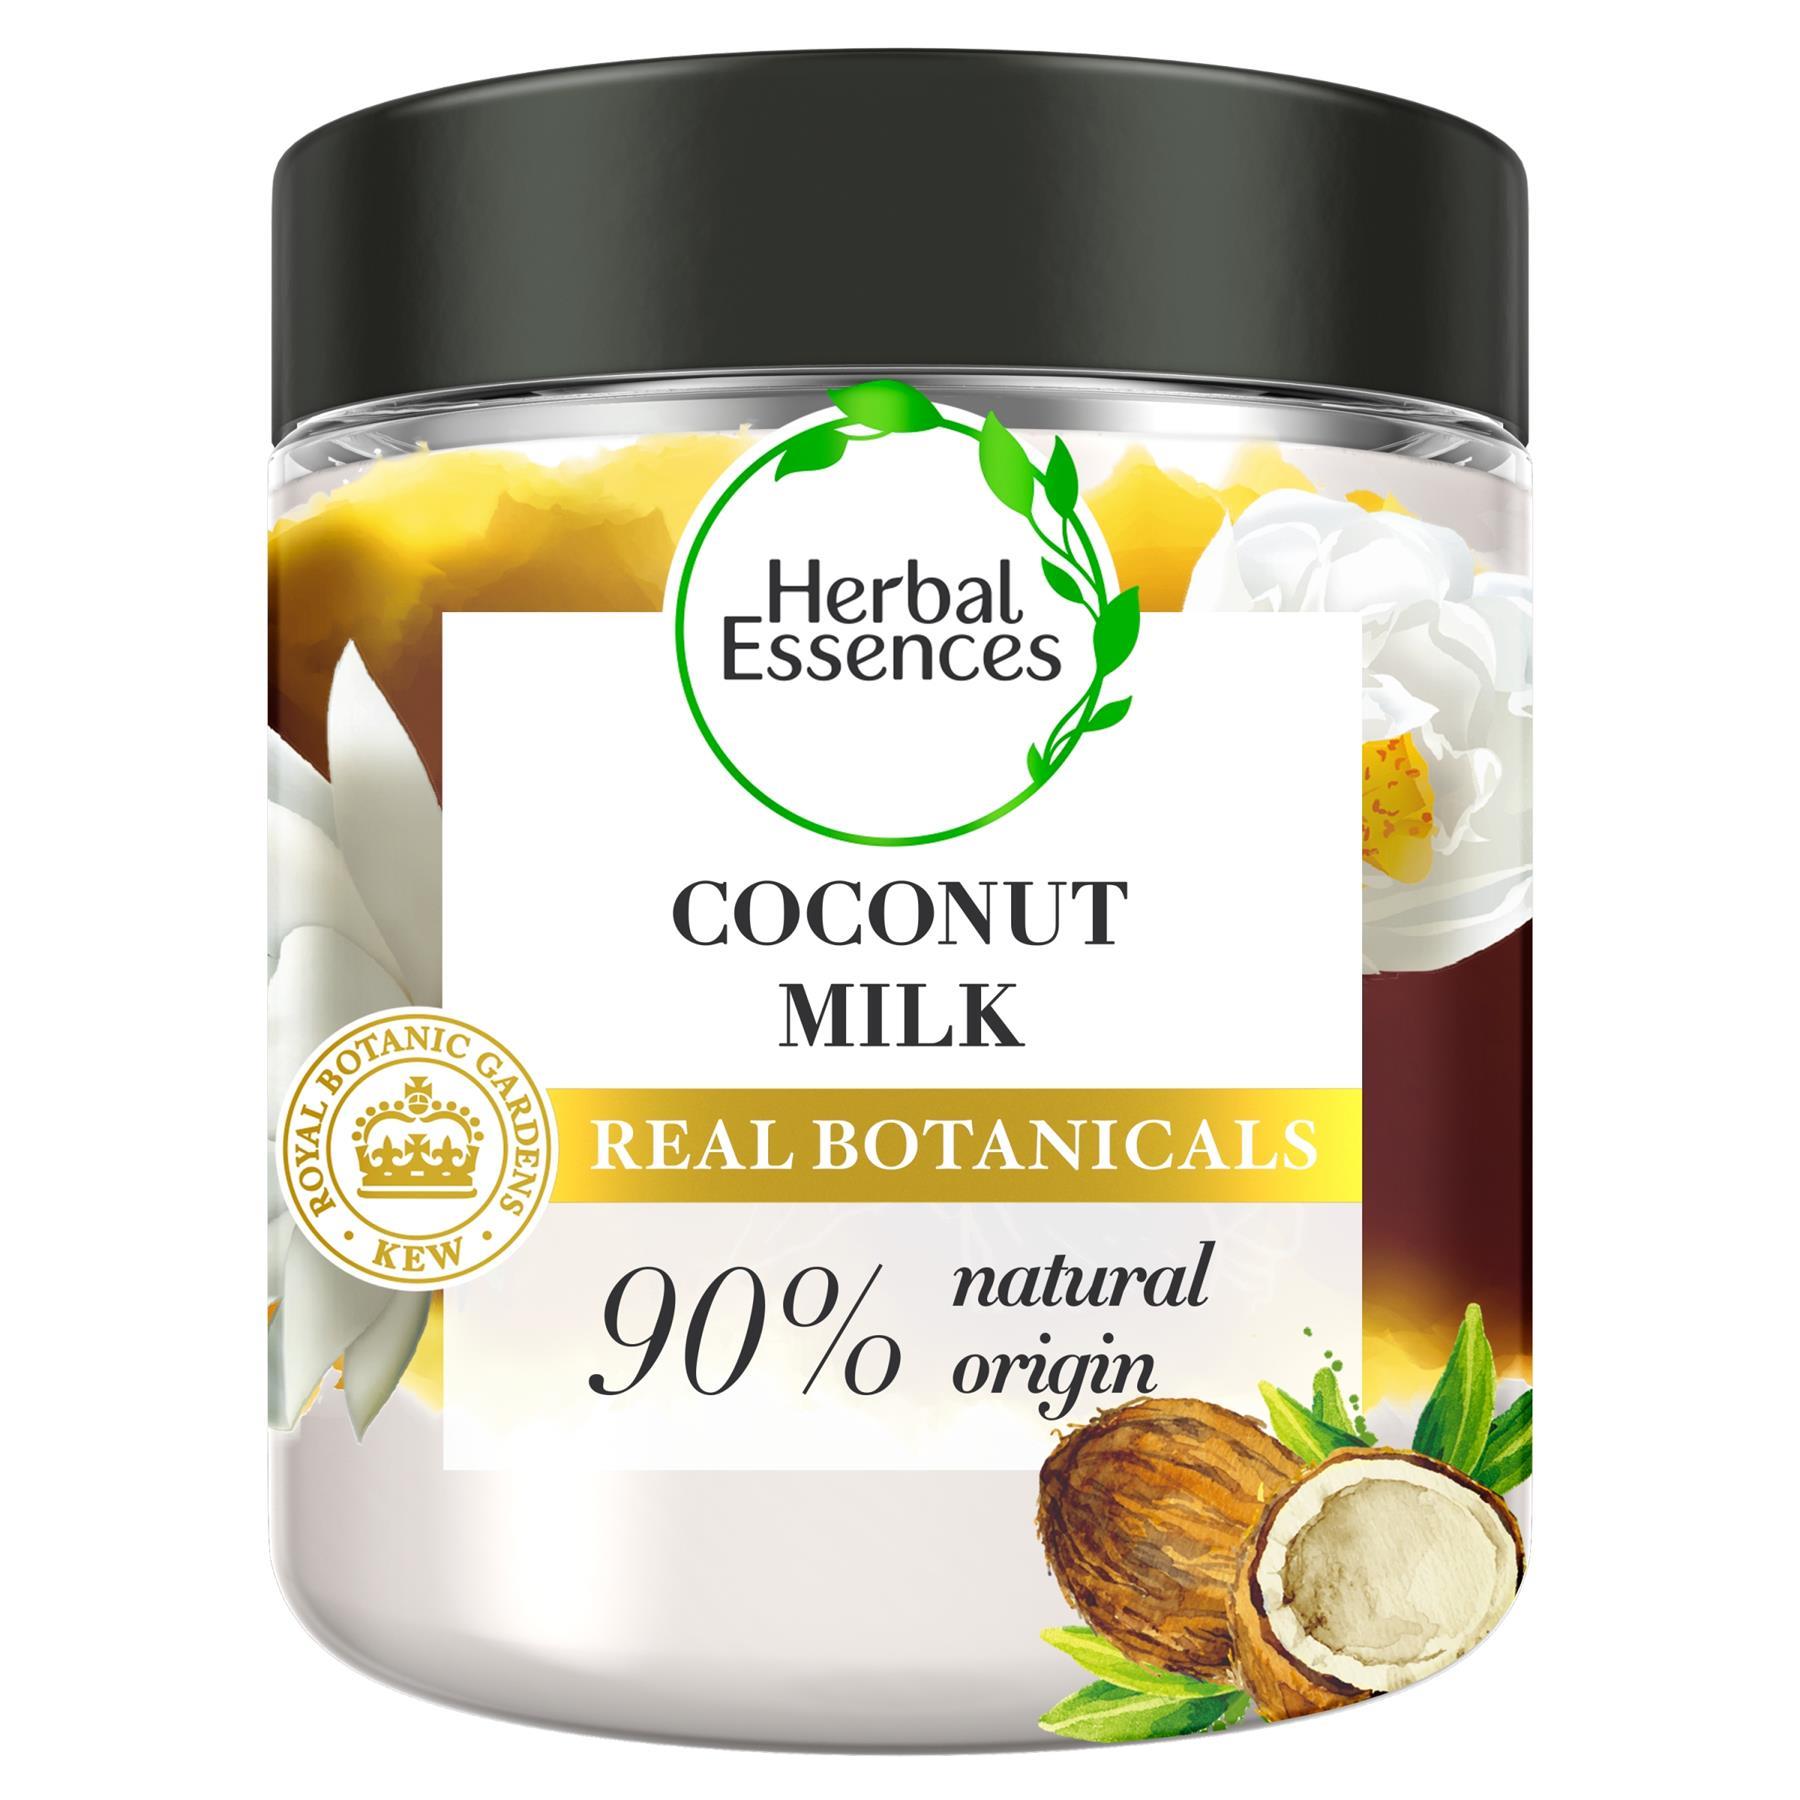 Herbal Kew Coconut Milk Hair Mask 250ml - 90% Natural Origin - | eBay